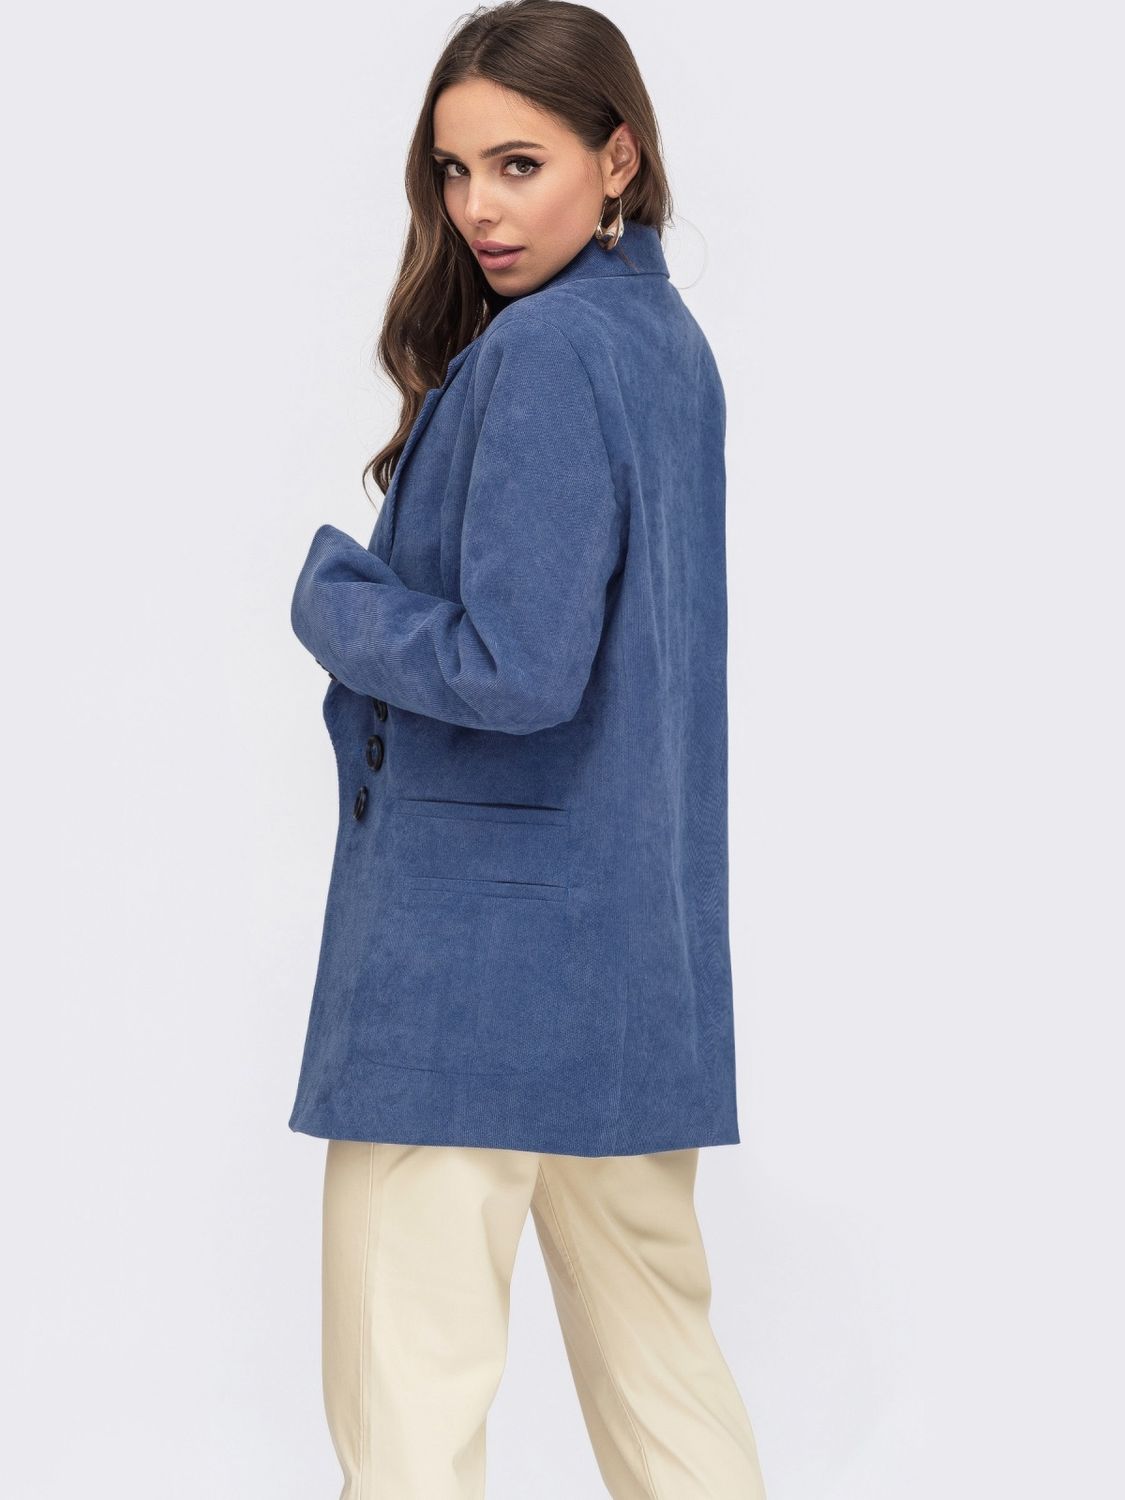 Женский вельветовый пиджак синего цвета - фото